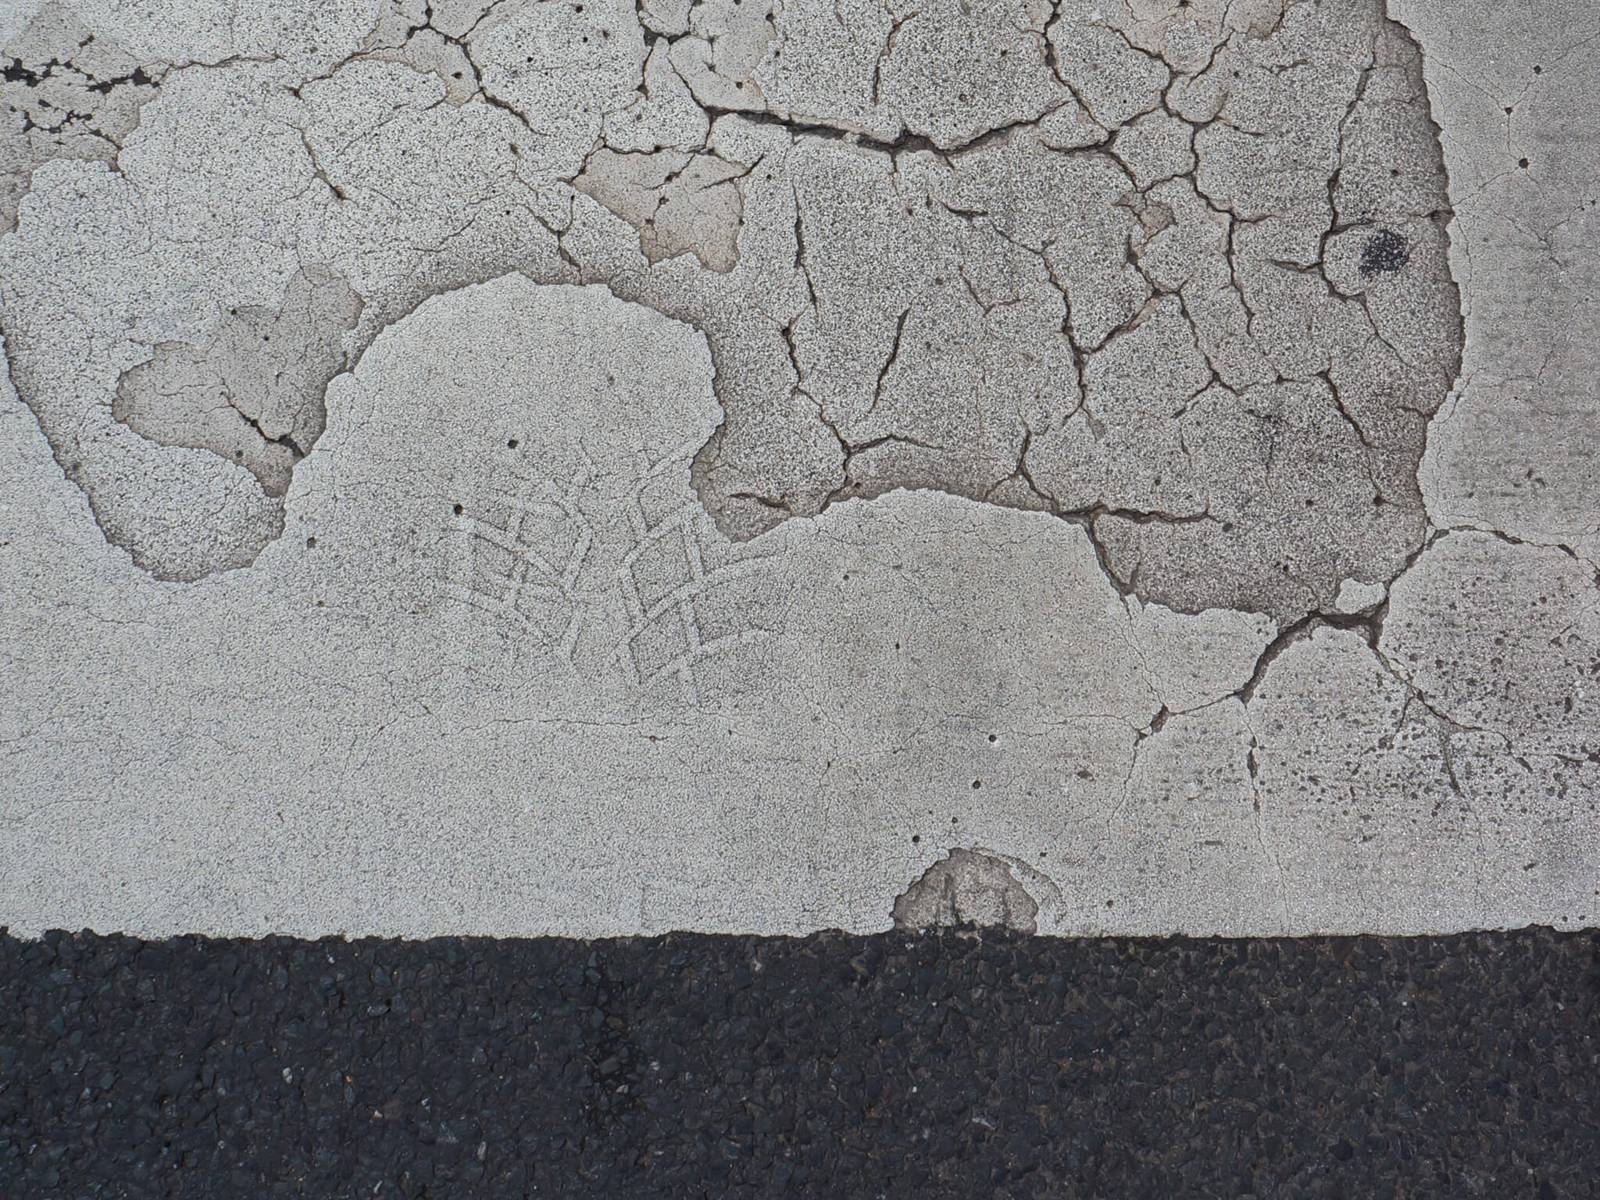 Fußabdruck in einer betonierten Straße